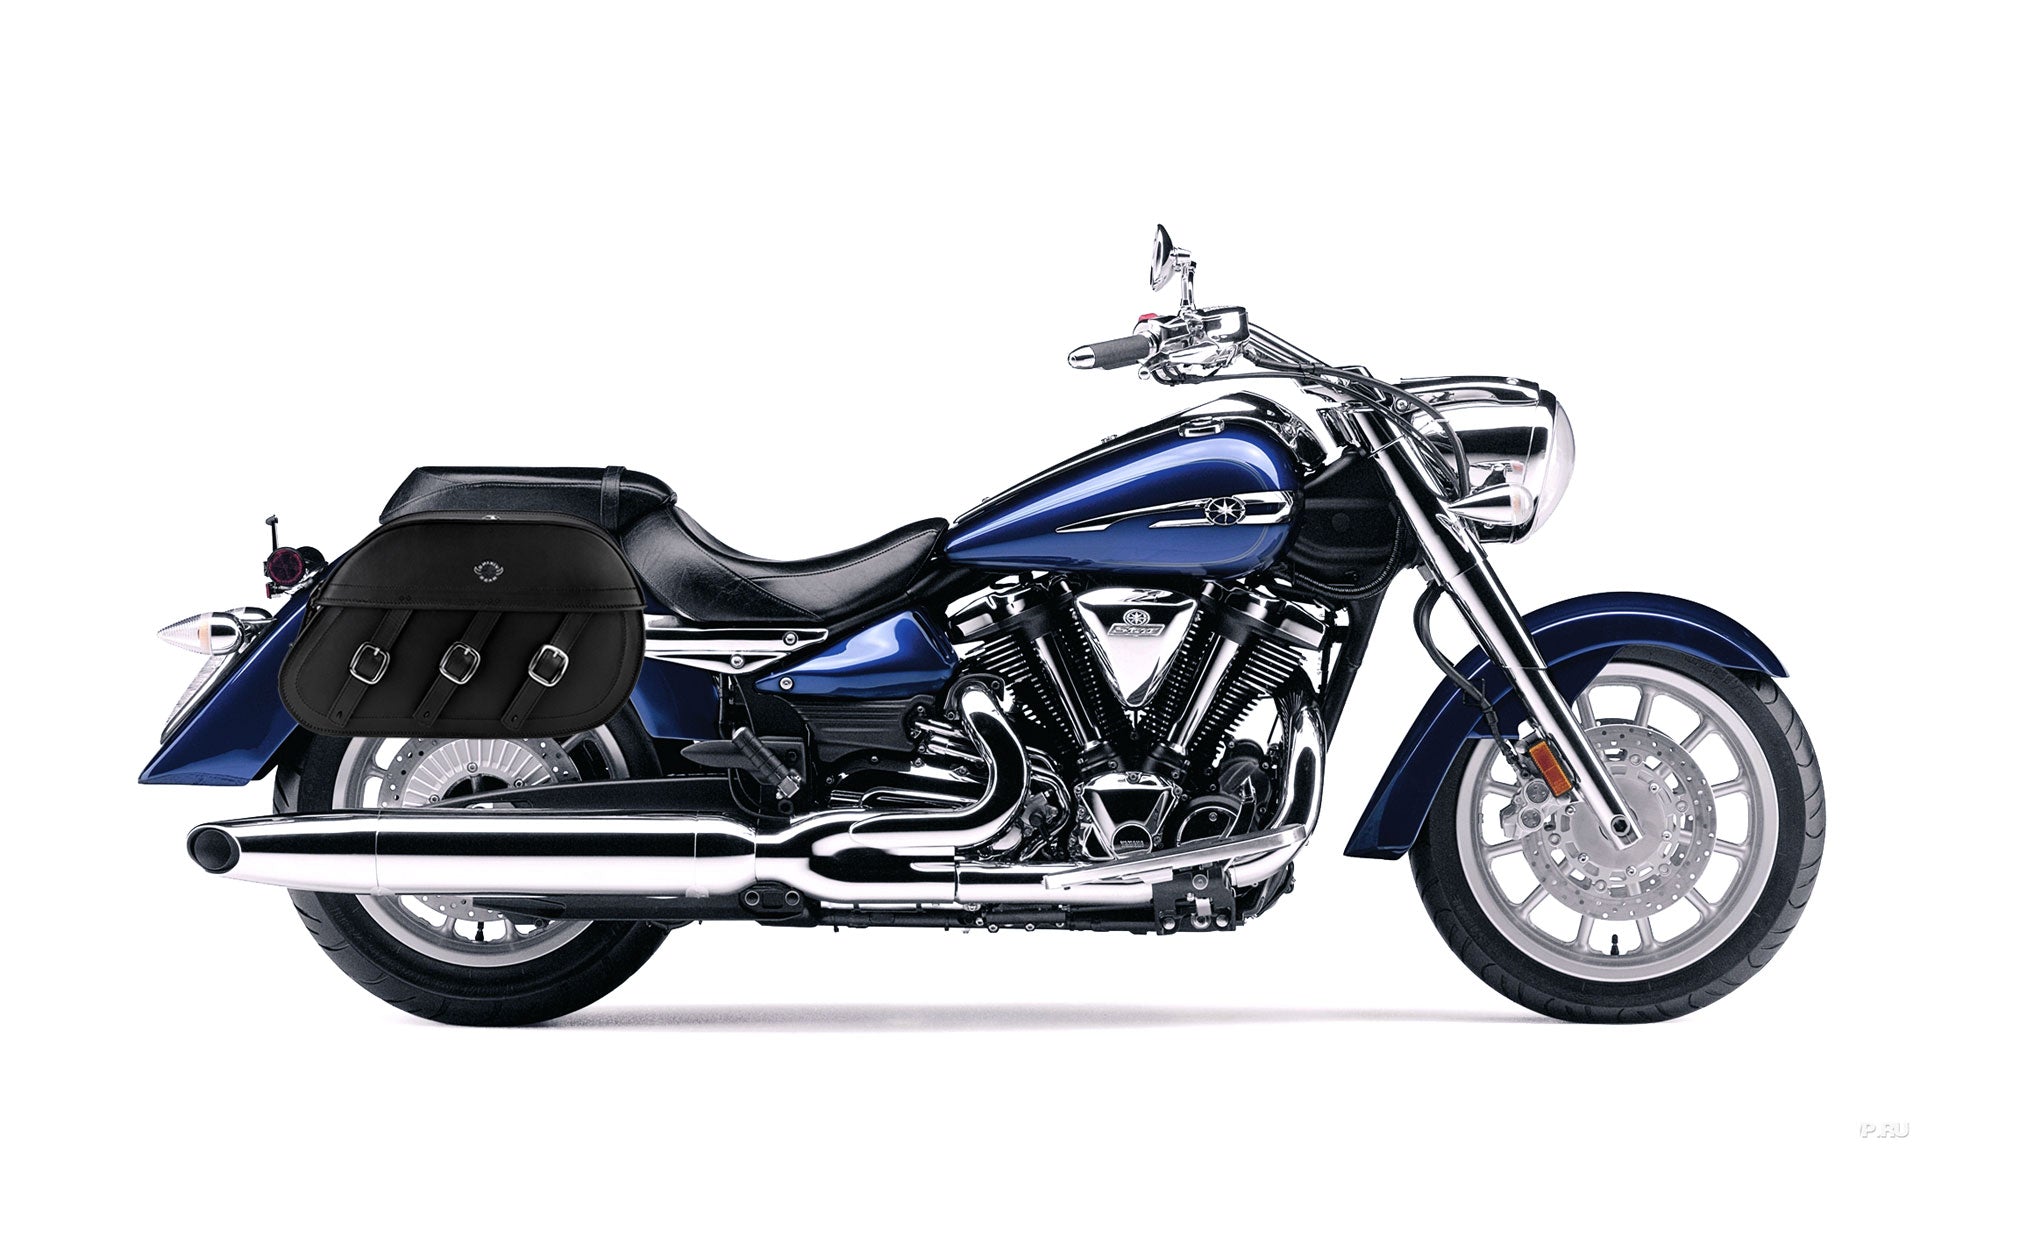 Viking Trianon Extra Large Yamaha Stratoliner Xv 1900 Leather Motorcycle Saddlebags on Bike Photo @expand